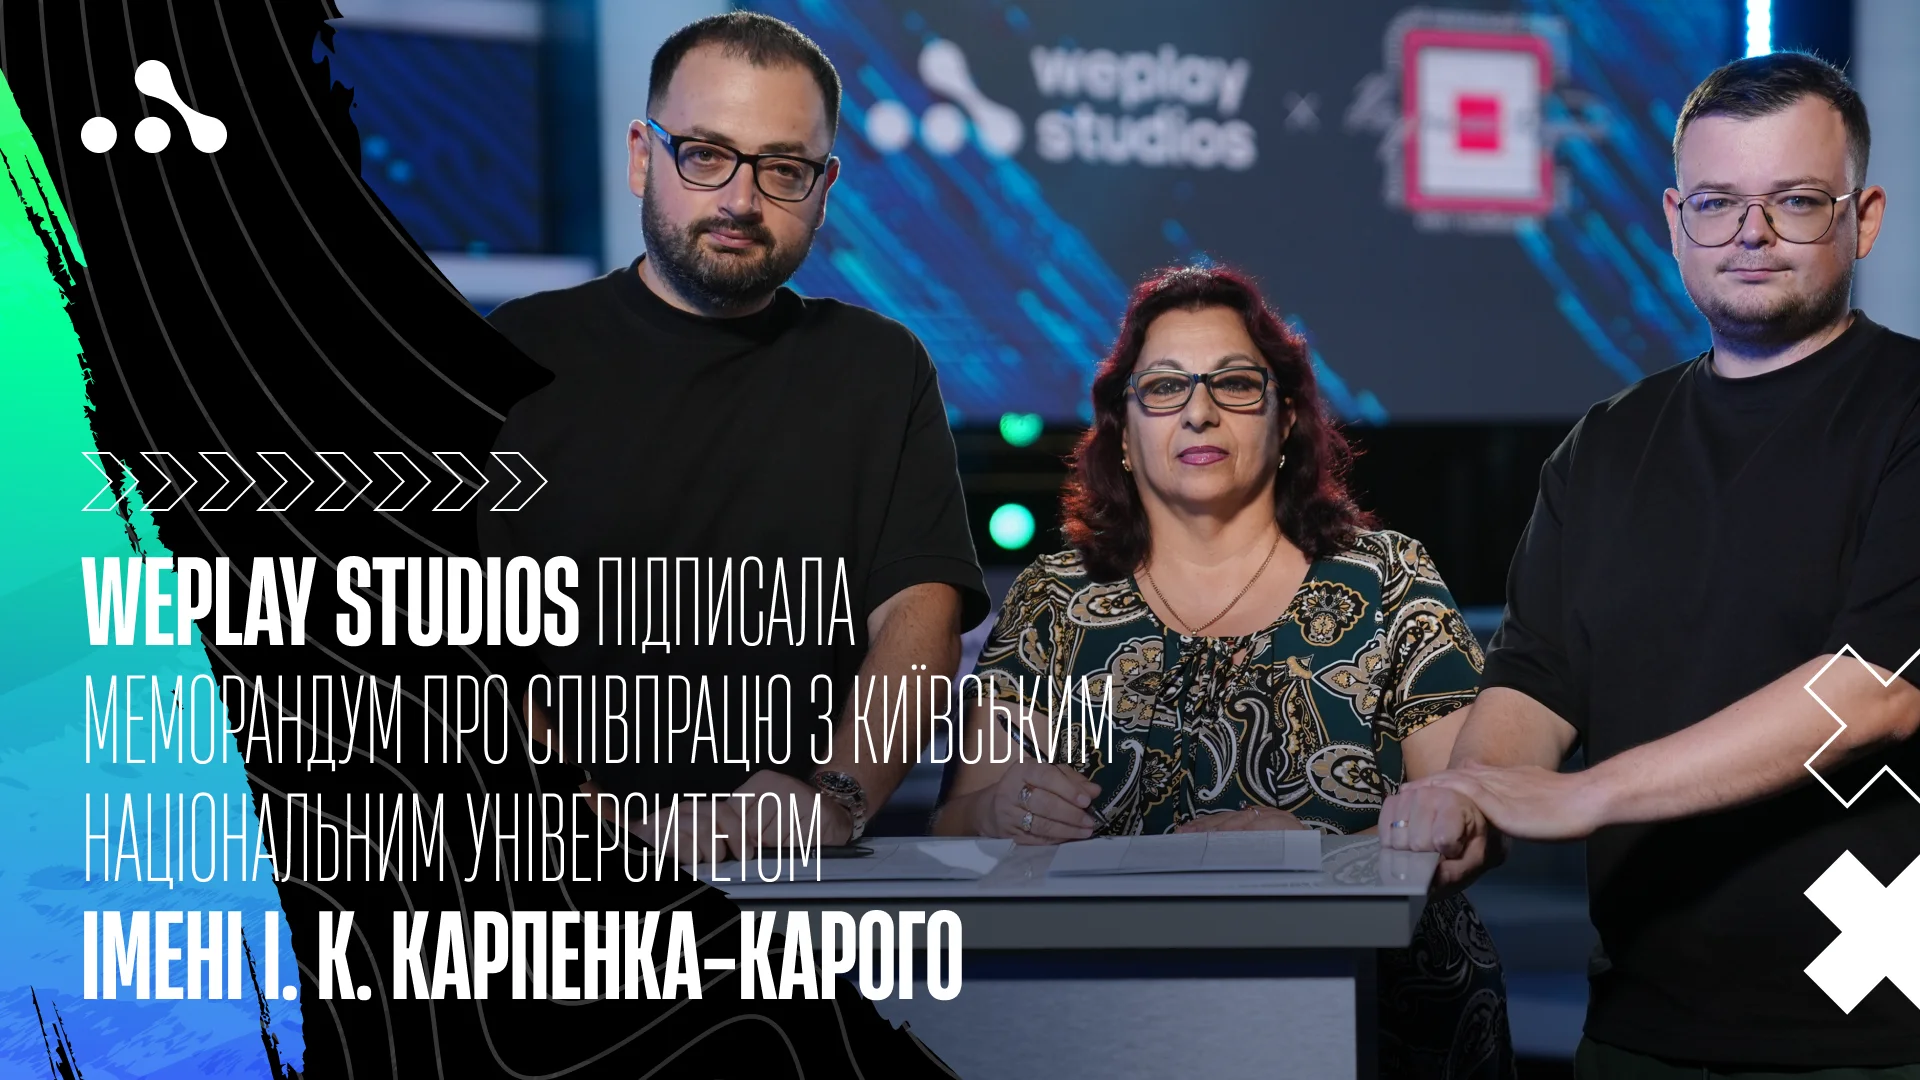 WePlay Studios підписала меморандум про співпрацю з Київським національним університетом імені І. К. Карпенка-Карого. Зображення: WePlay Studios